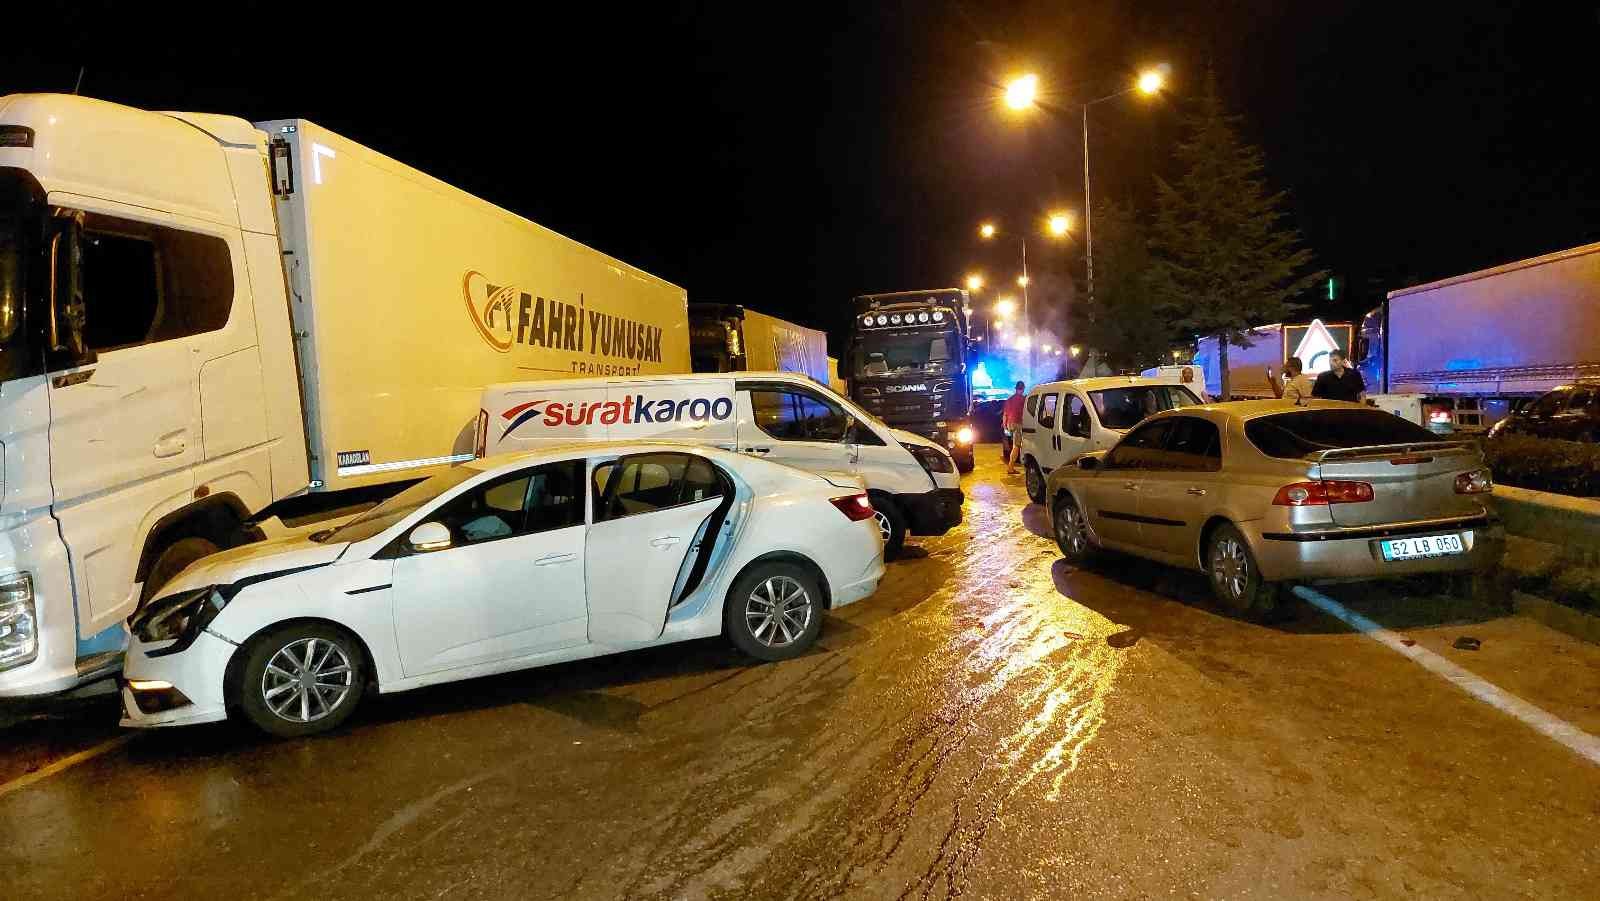 Samsun'da feci kaza: 23 araç birbirine girdi, 18 kişi yaralandı
